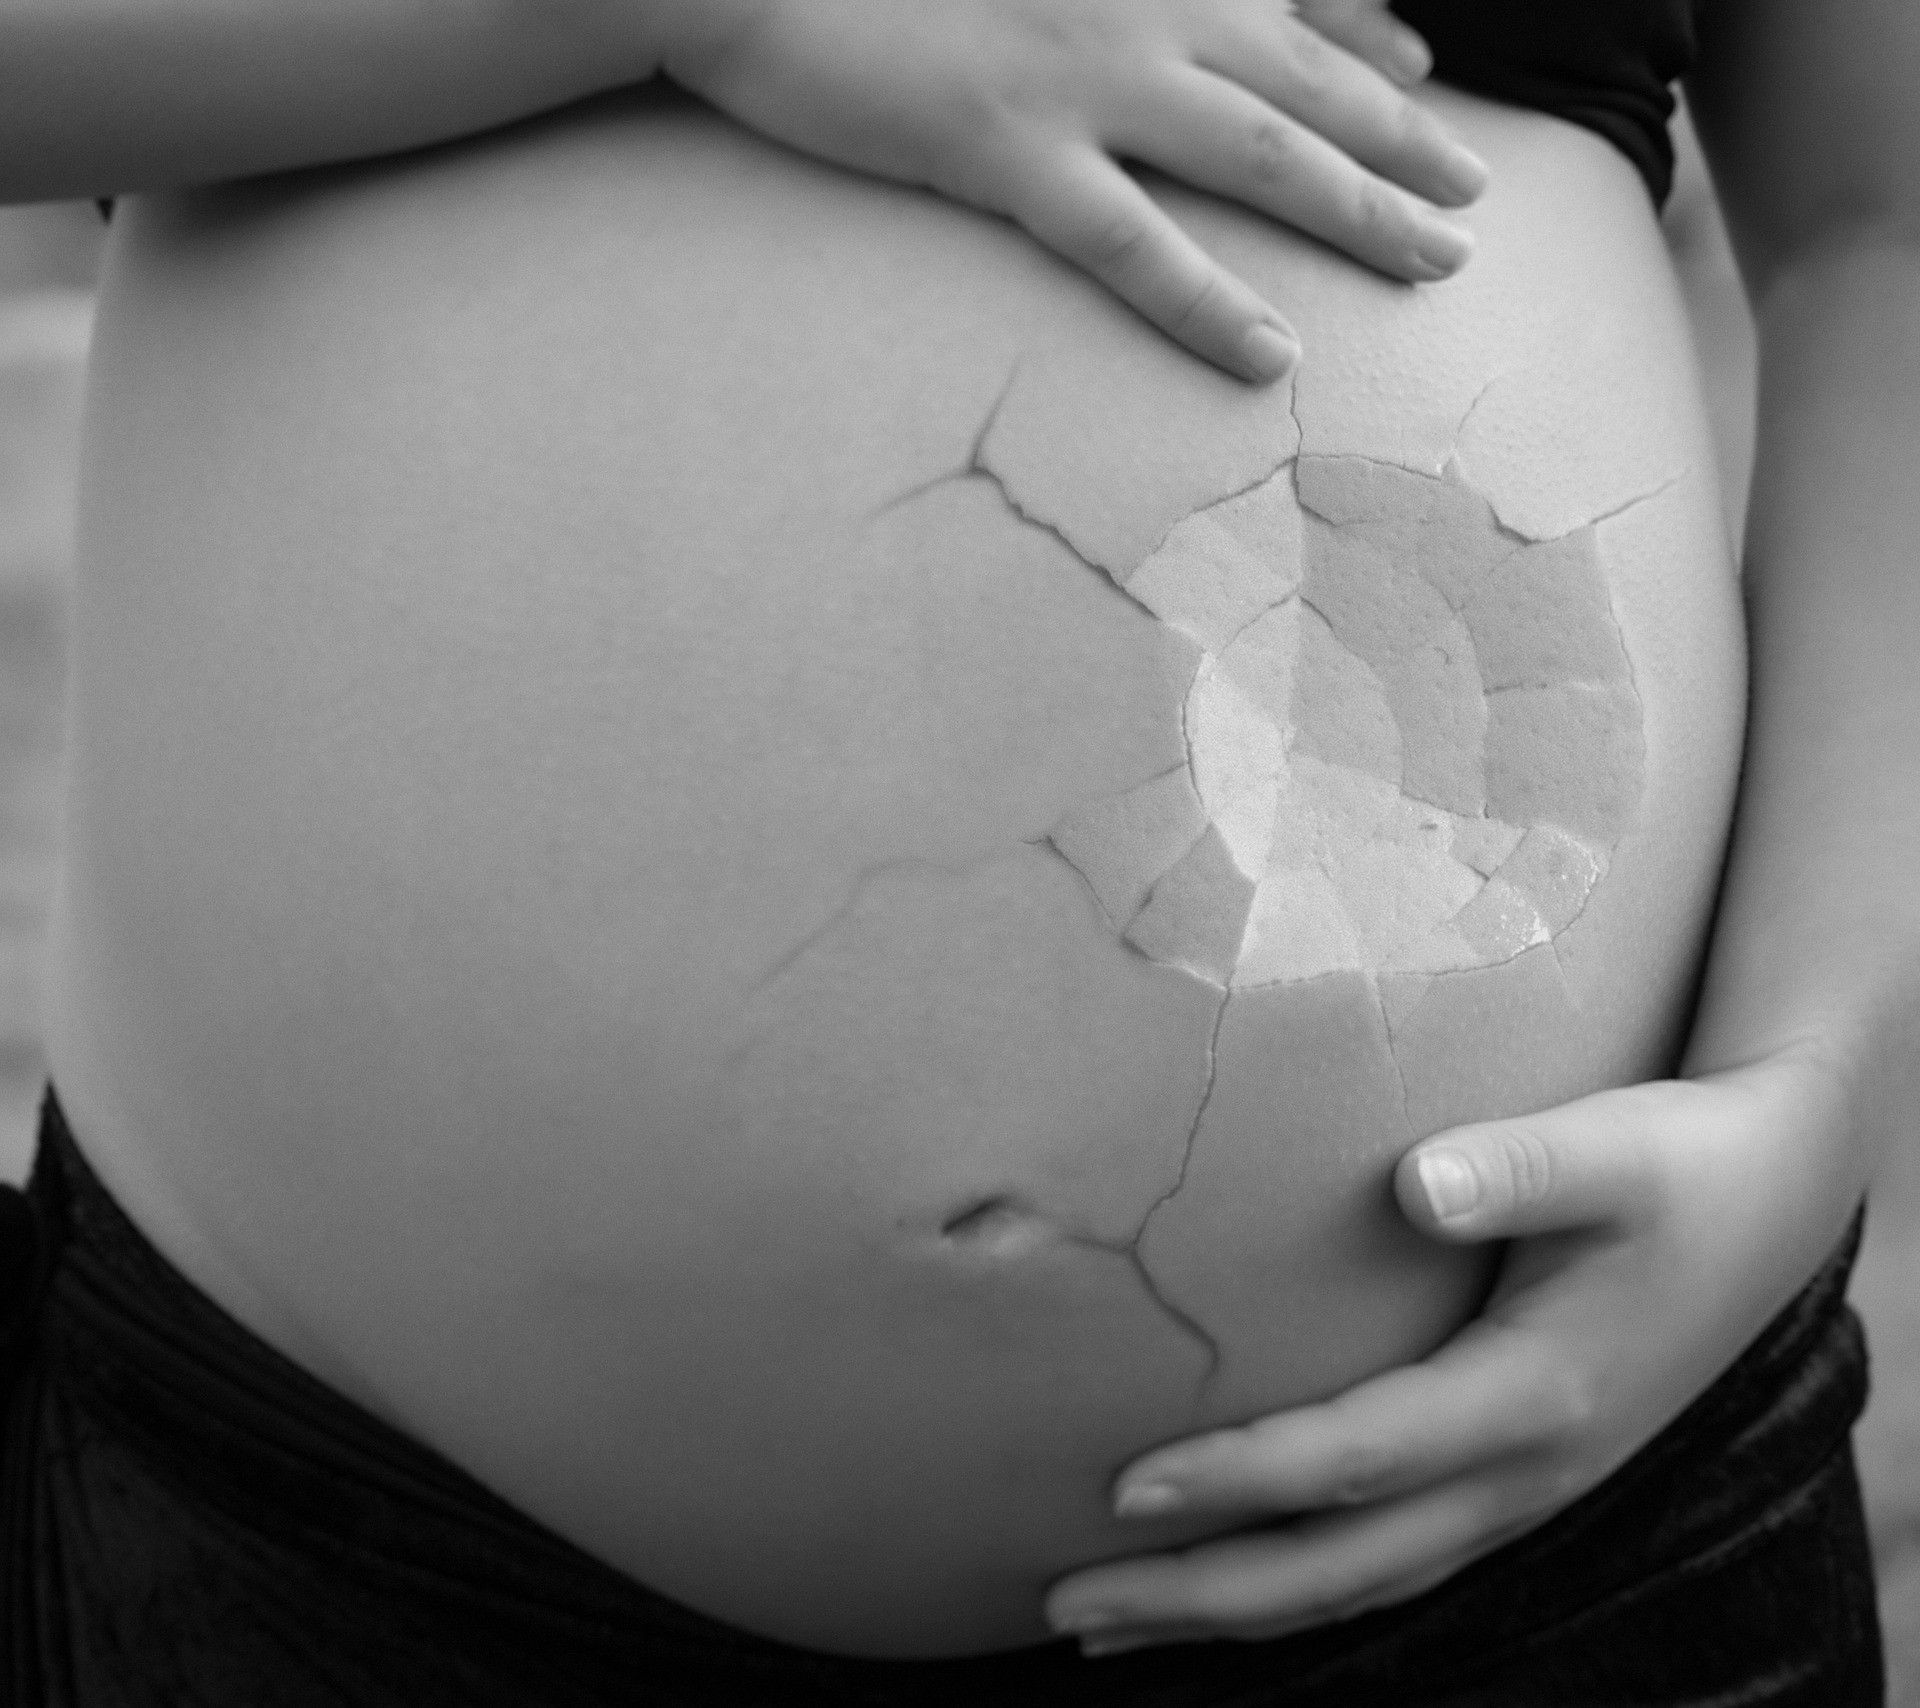 年輕夫妻產下男嬰 生殖器短小乳暈深 1個月後醫院急來電 寶寶是女孩 Ettoday大陸新聞 Ettoday新聞雲